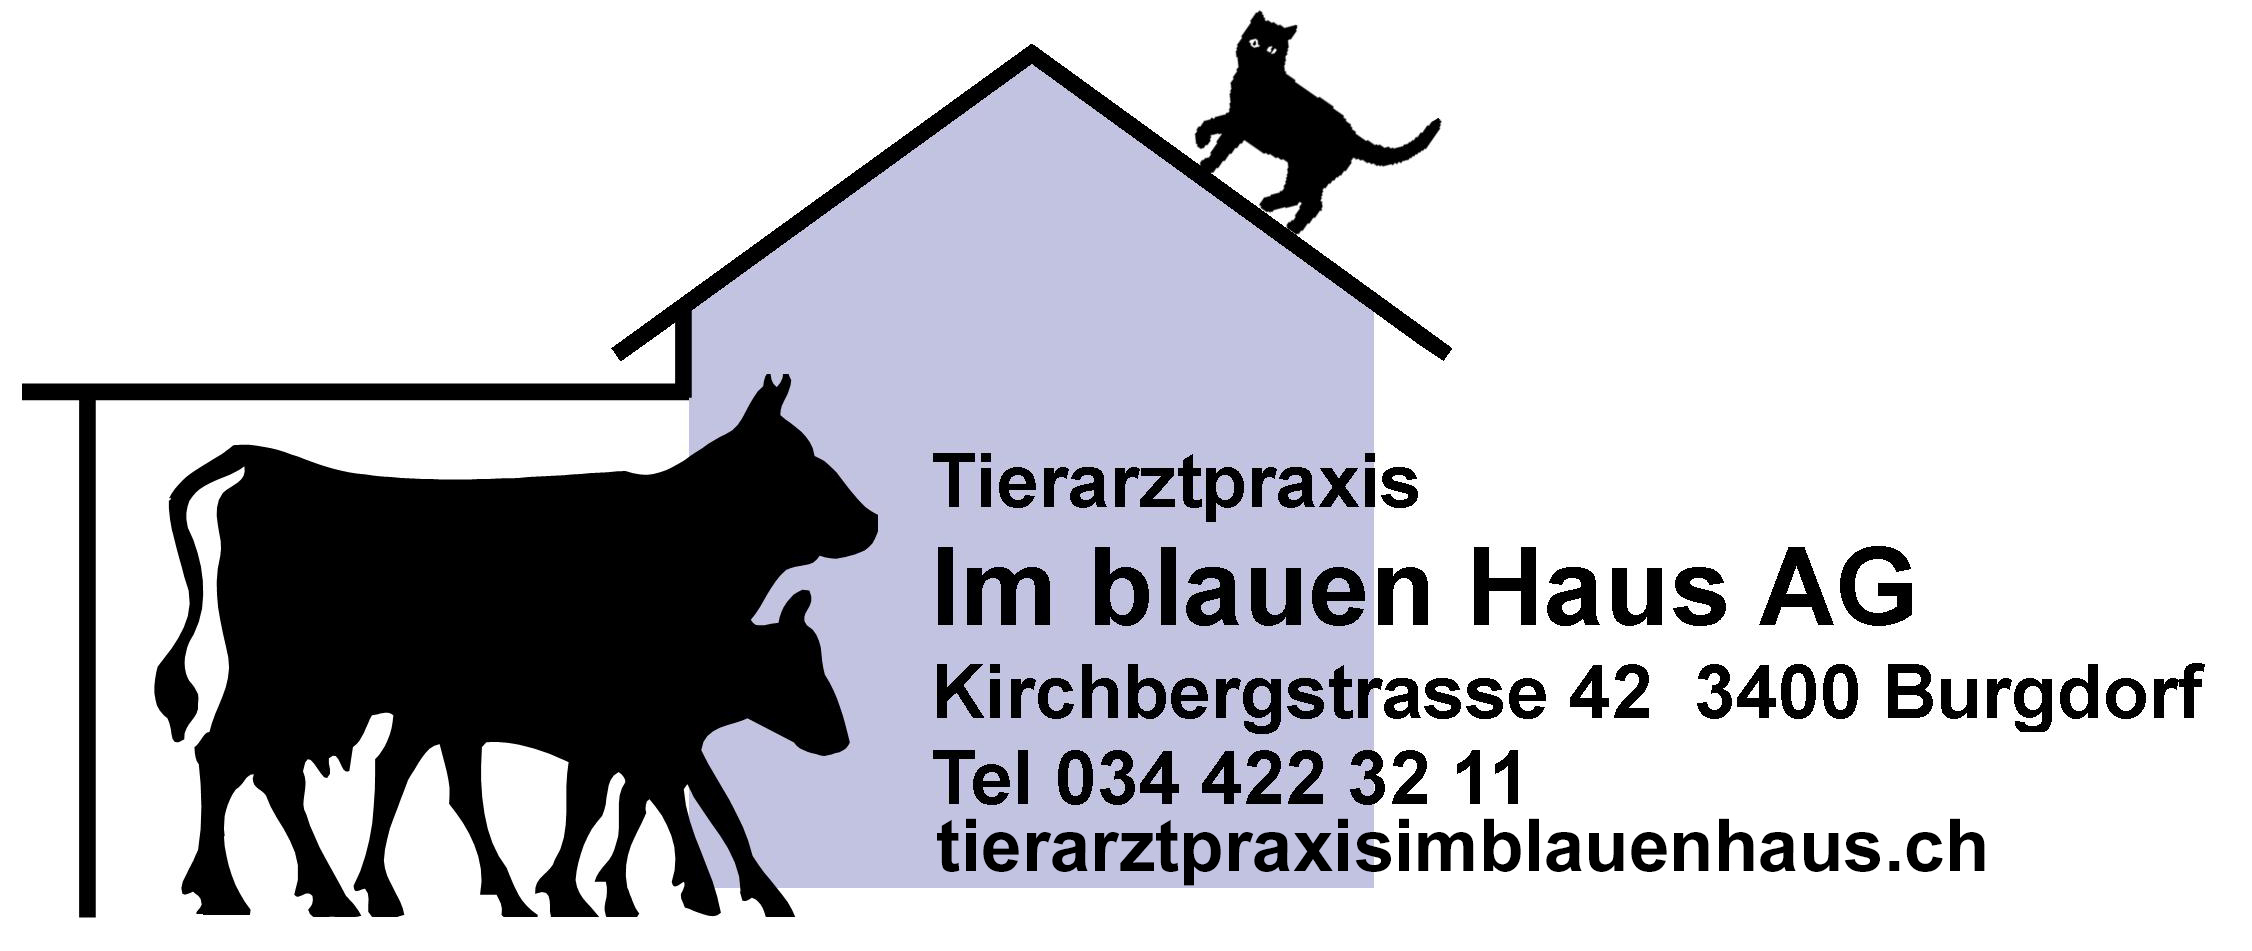 Tierarztpraxis im blauen Haus AG